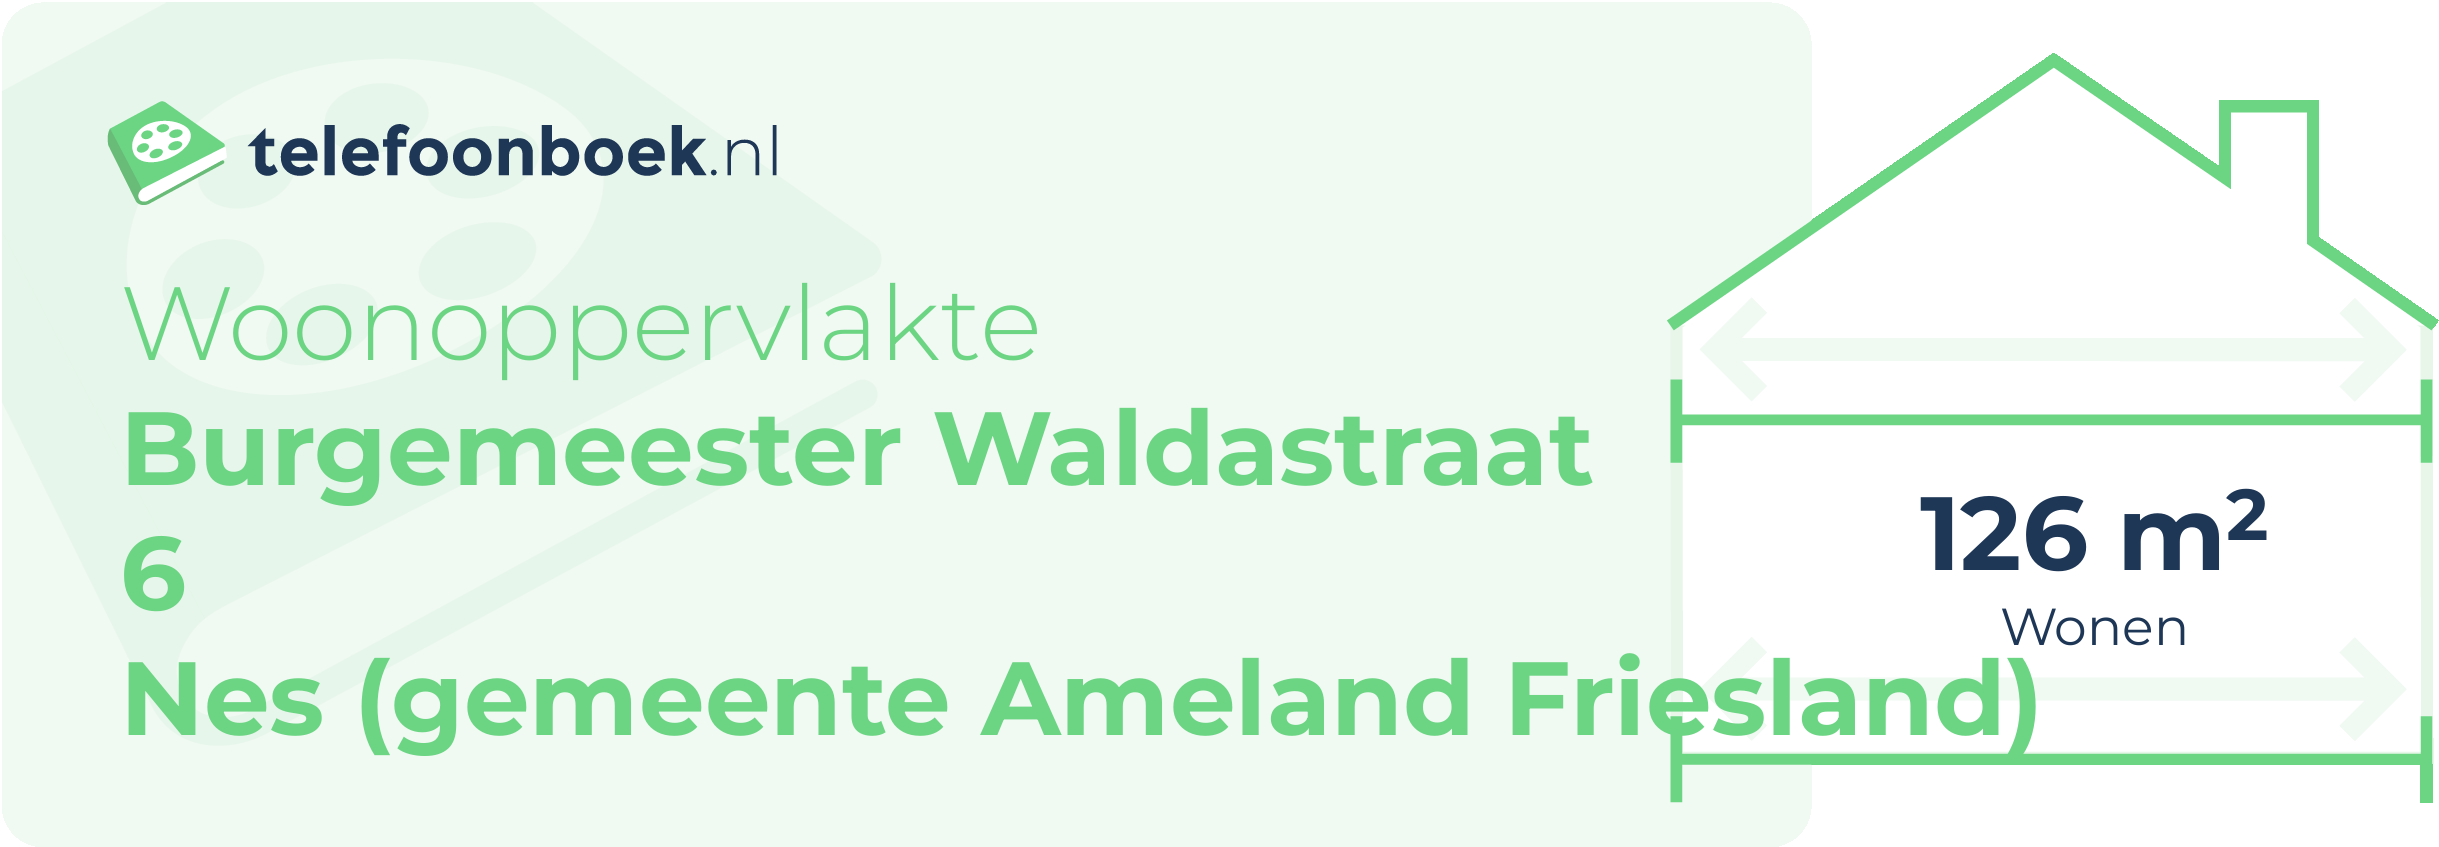 Woonoppervlakte Burgemeester Waldastraat 6 Nes (gemeente Ameland Friesland)